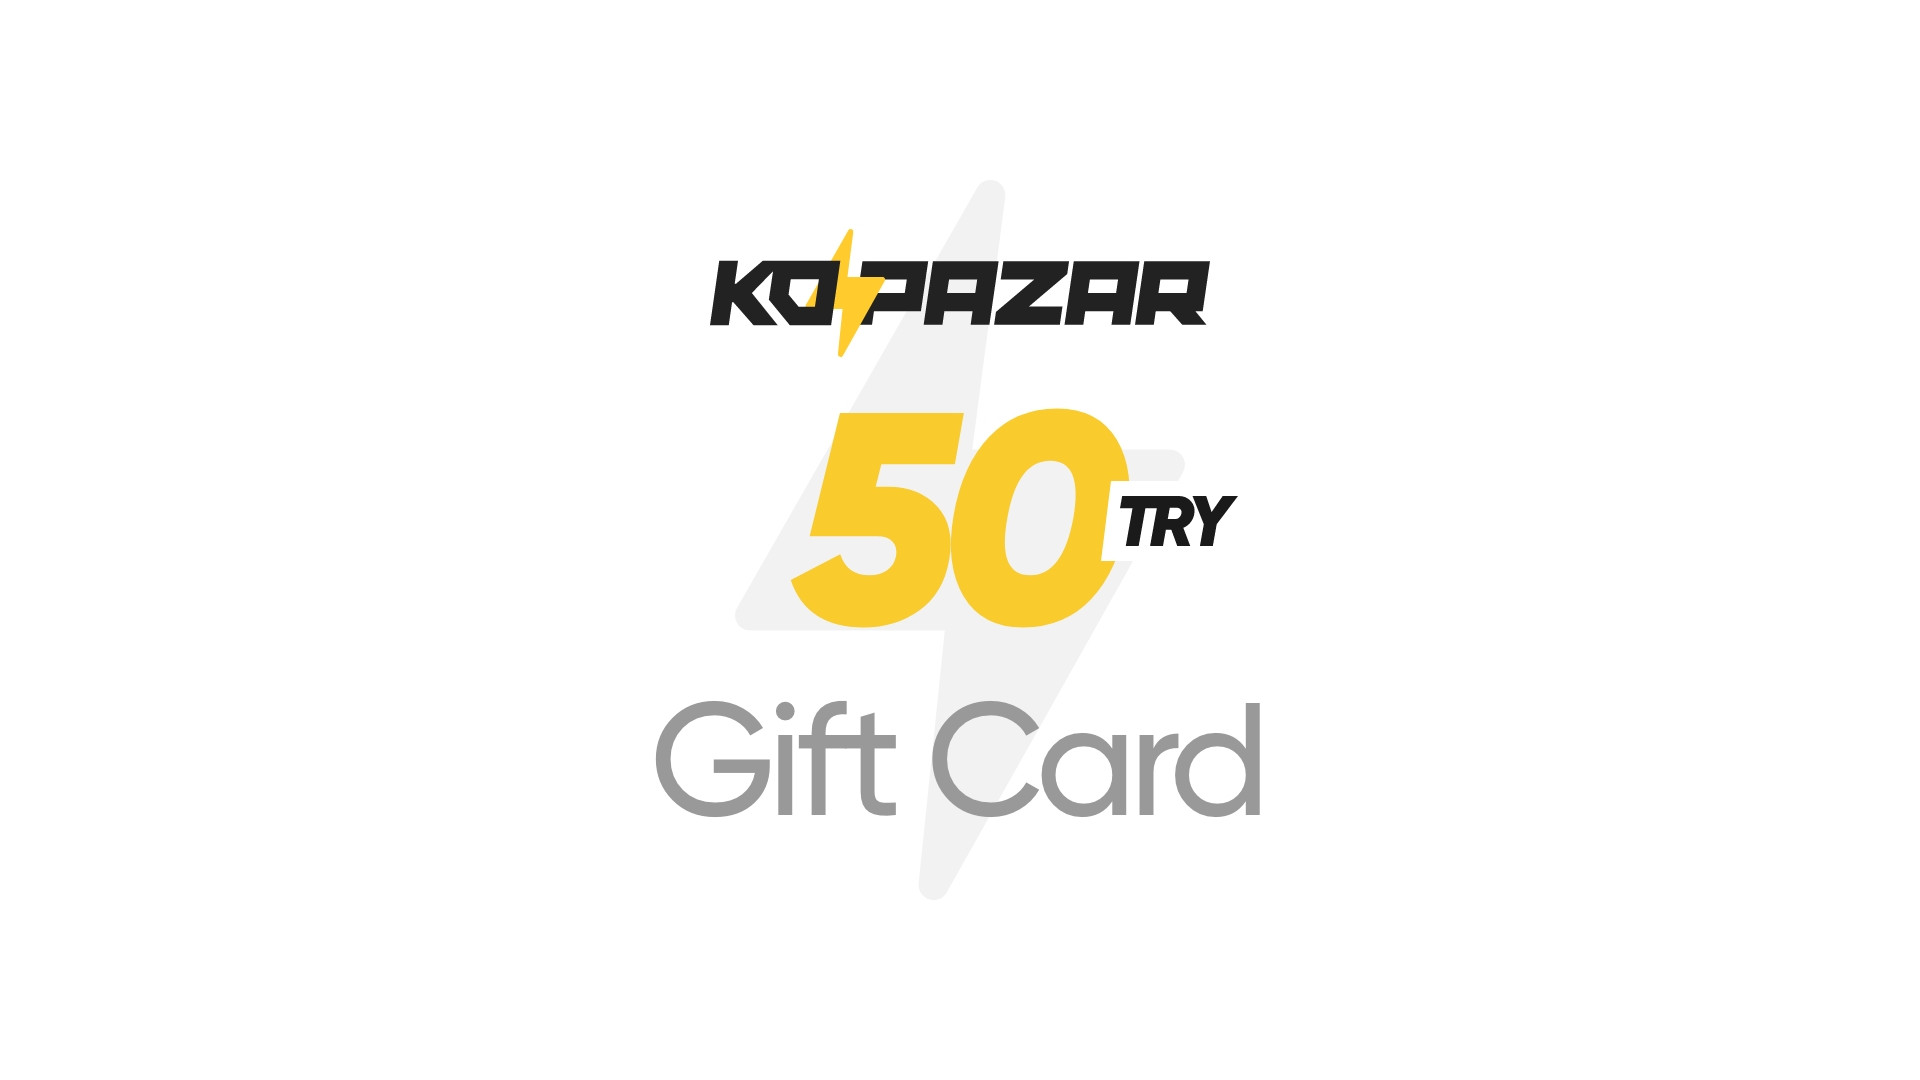 Kopazar 50 TRY Gift Card, $2.09